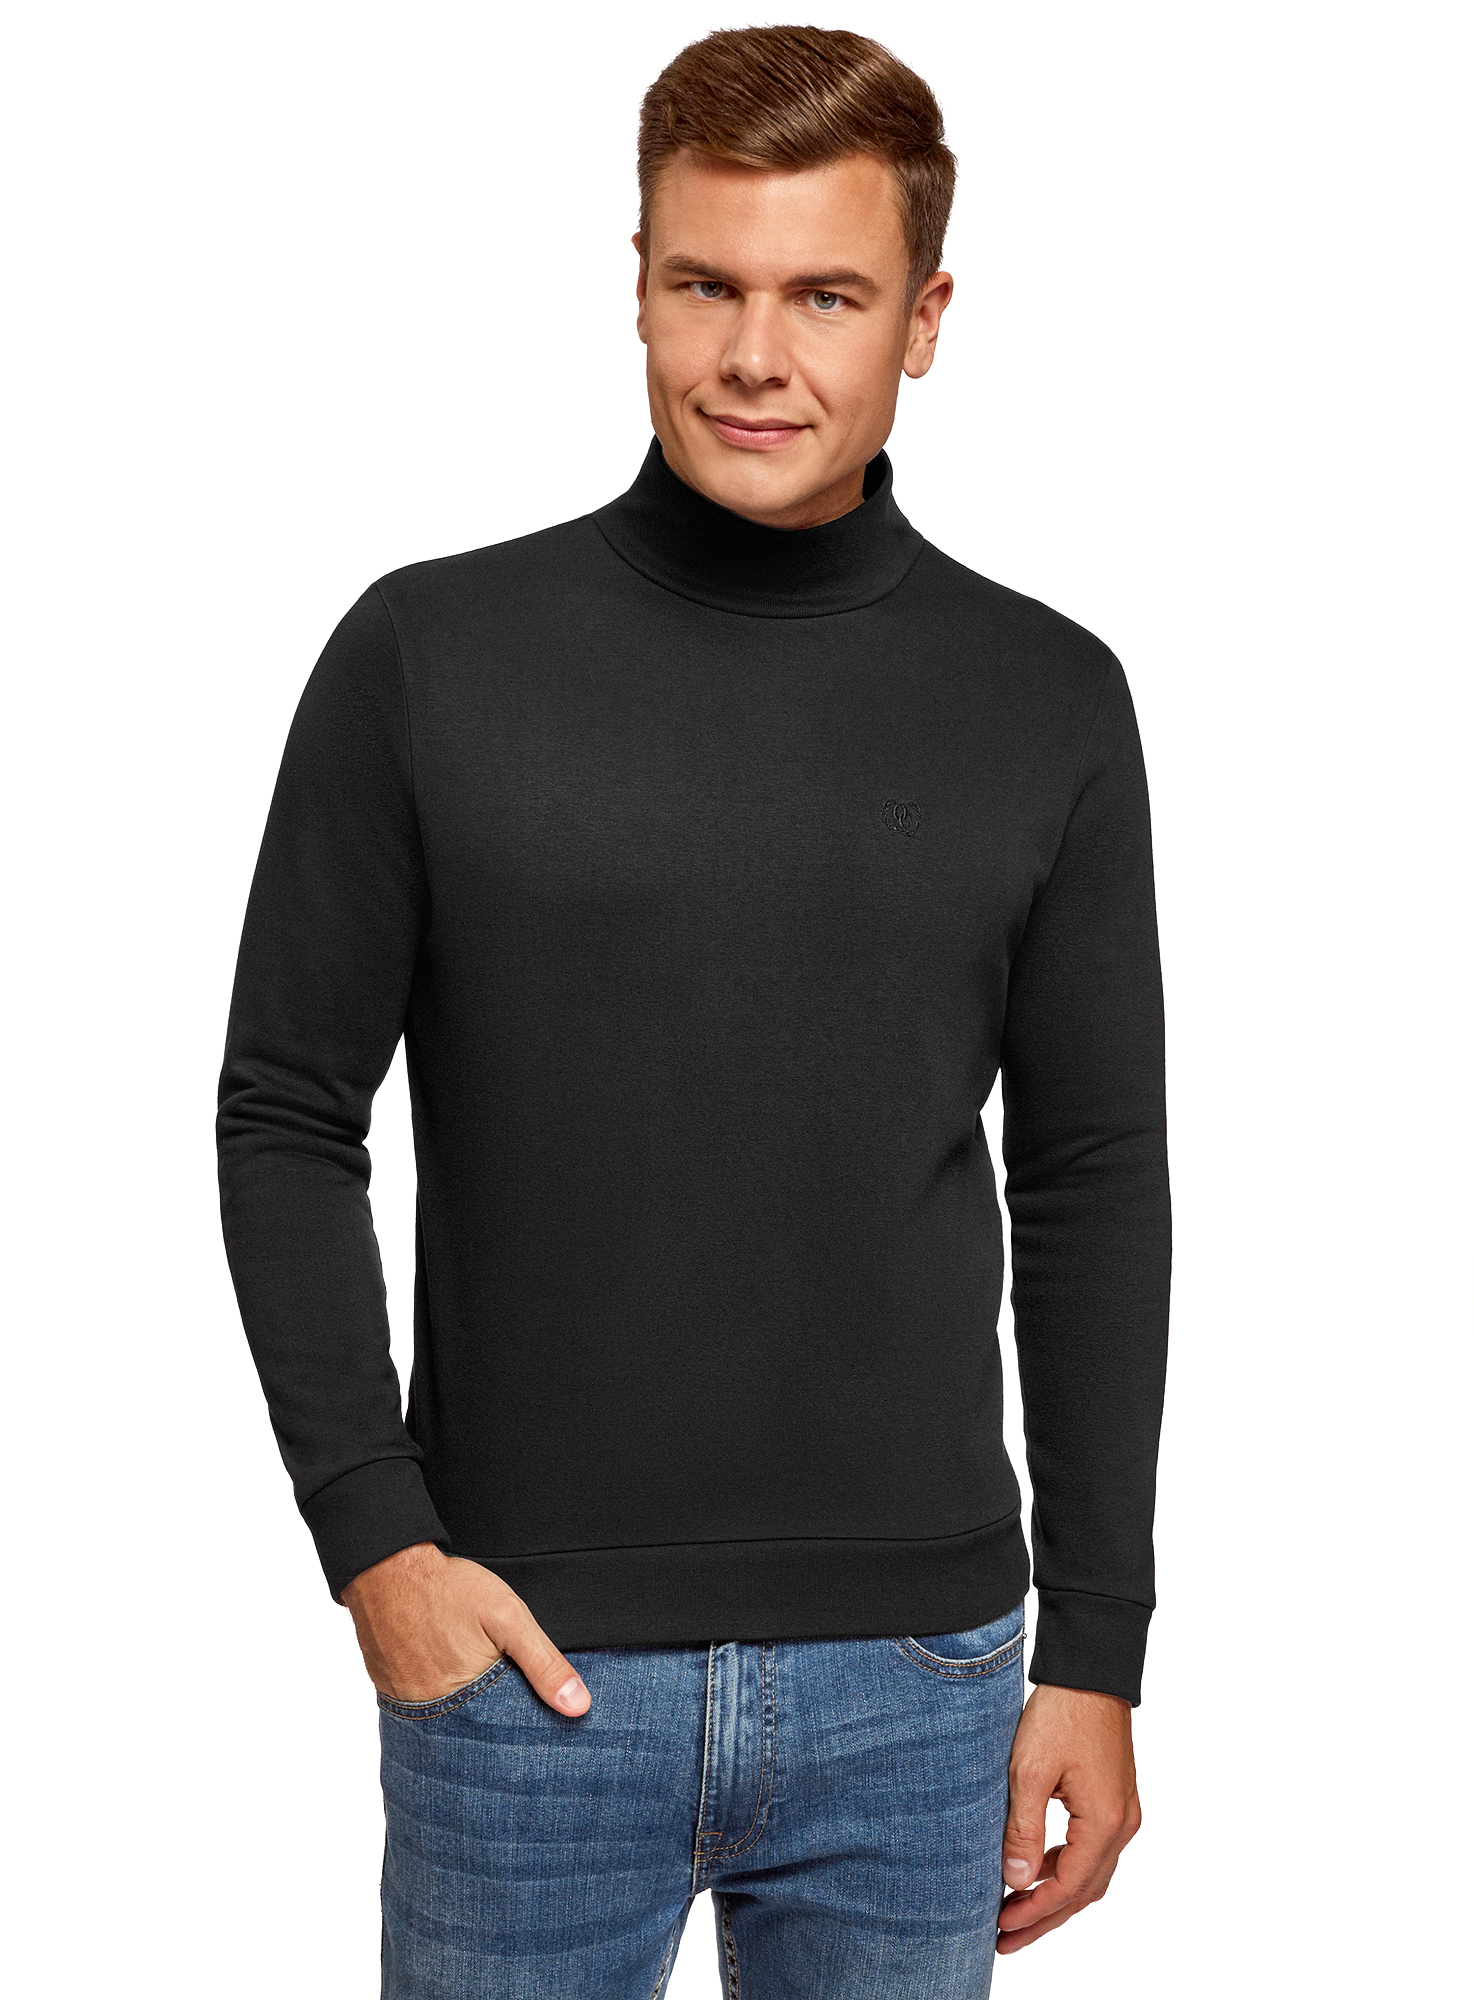 Мужчина в черном свитере